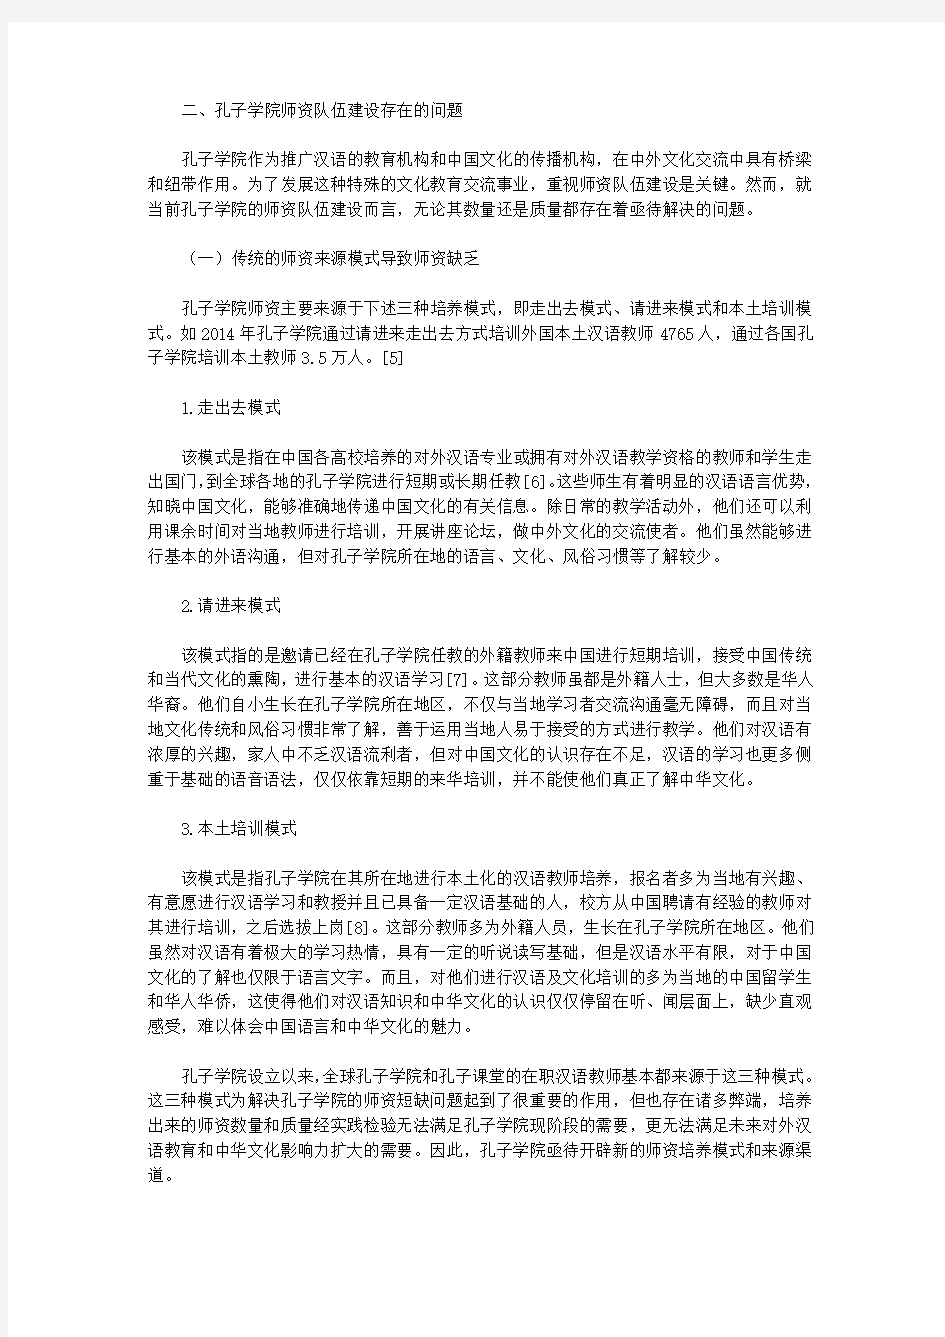 [孔子,汉语,建议]孔子学院汉语教师问题及培养建议